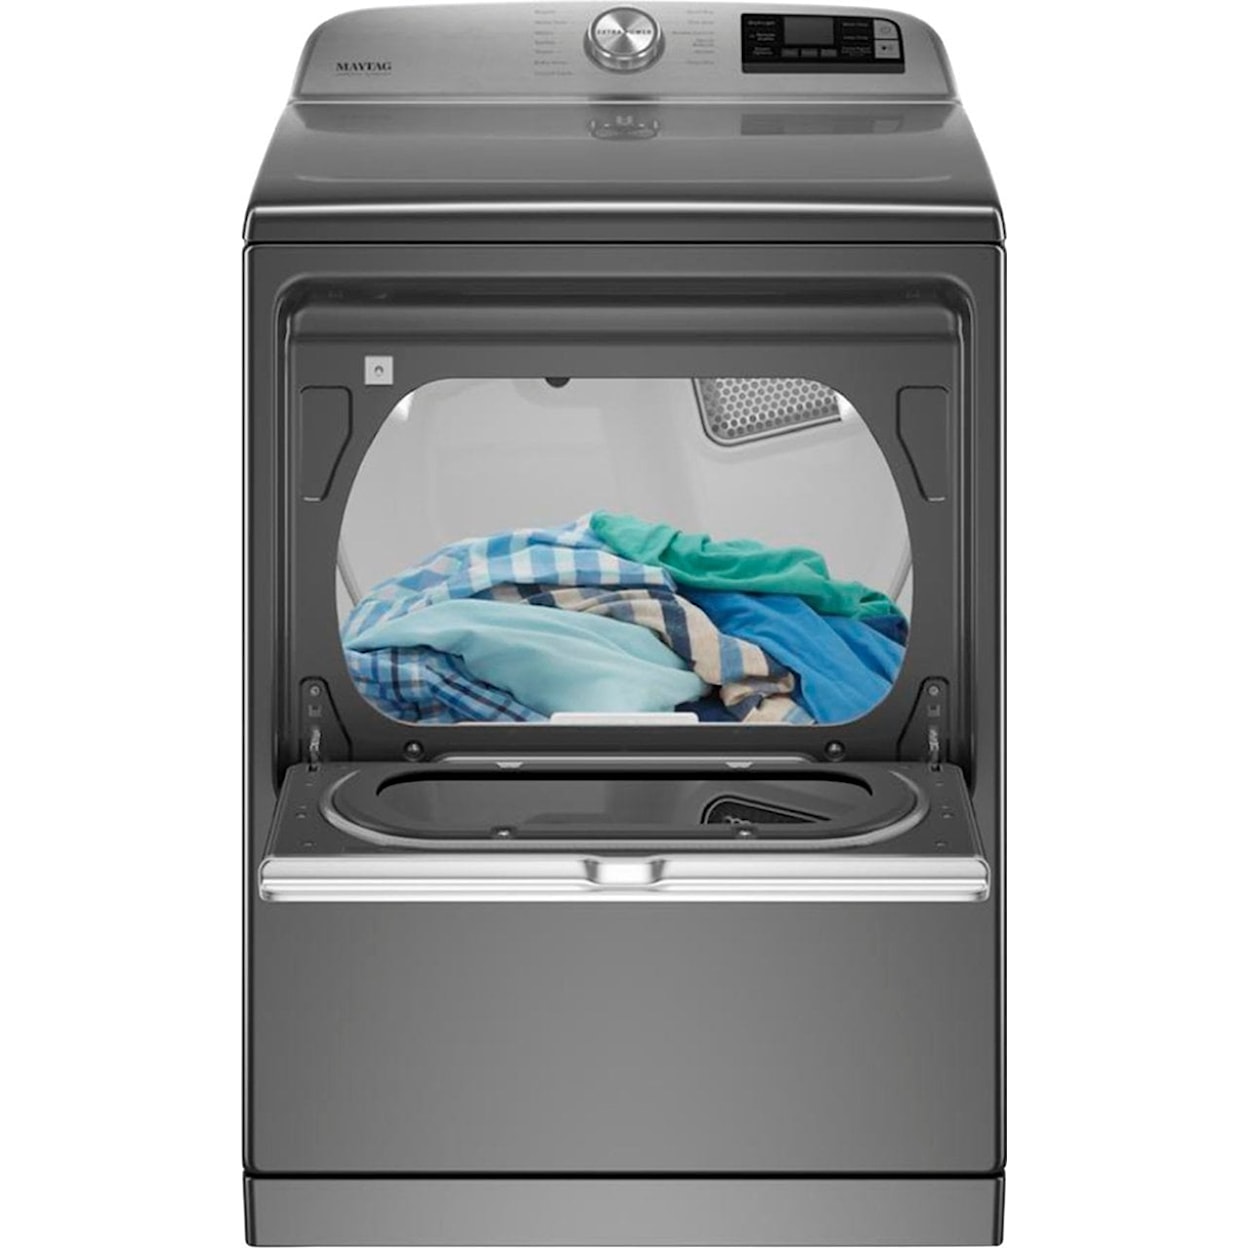 Maytag Laundry Washer